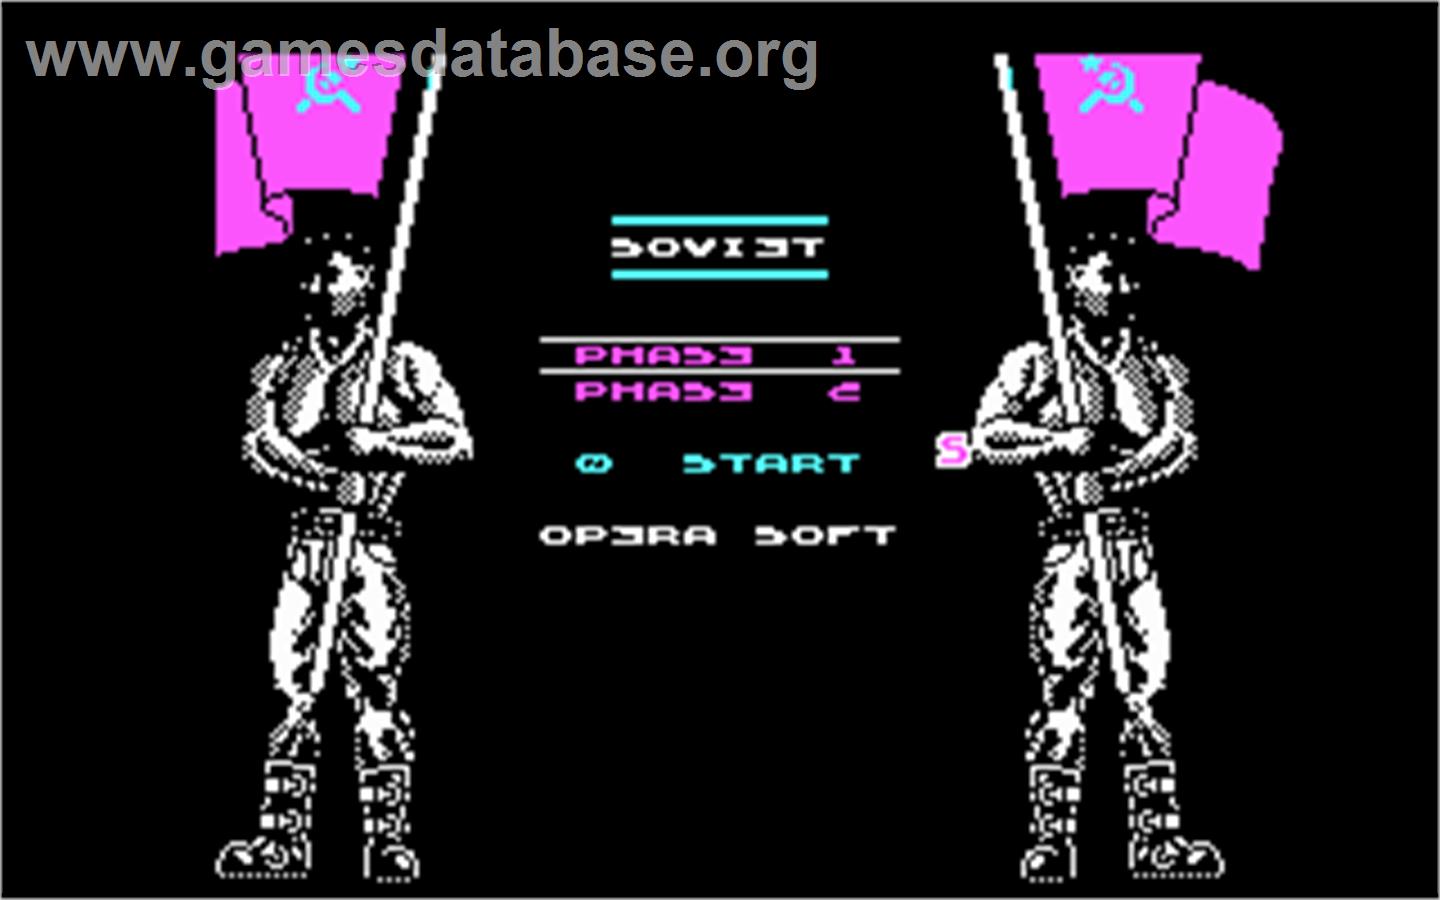 Soviet - Microsoft DOS - Artwork - In Game